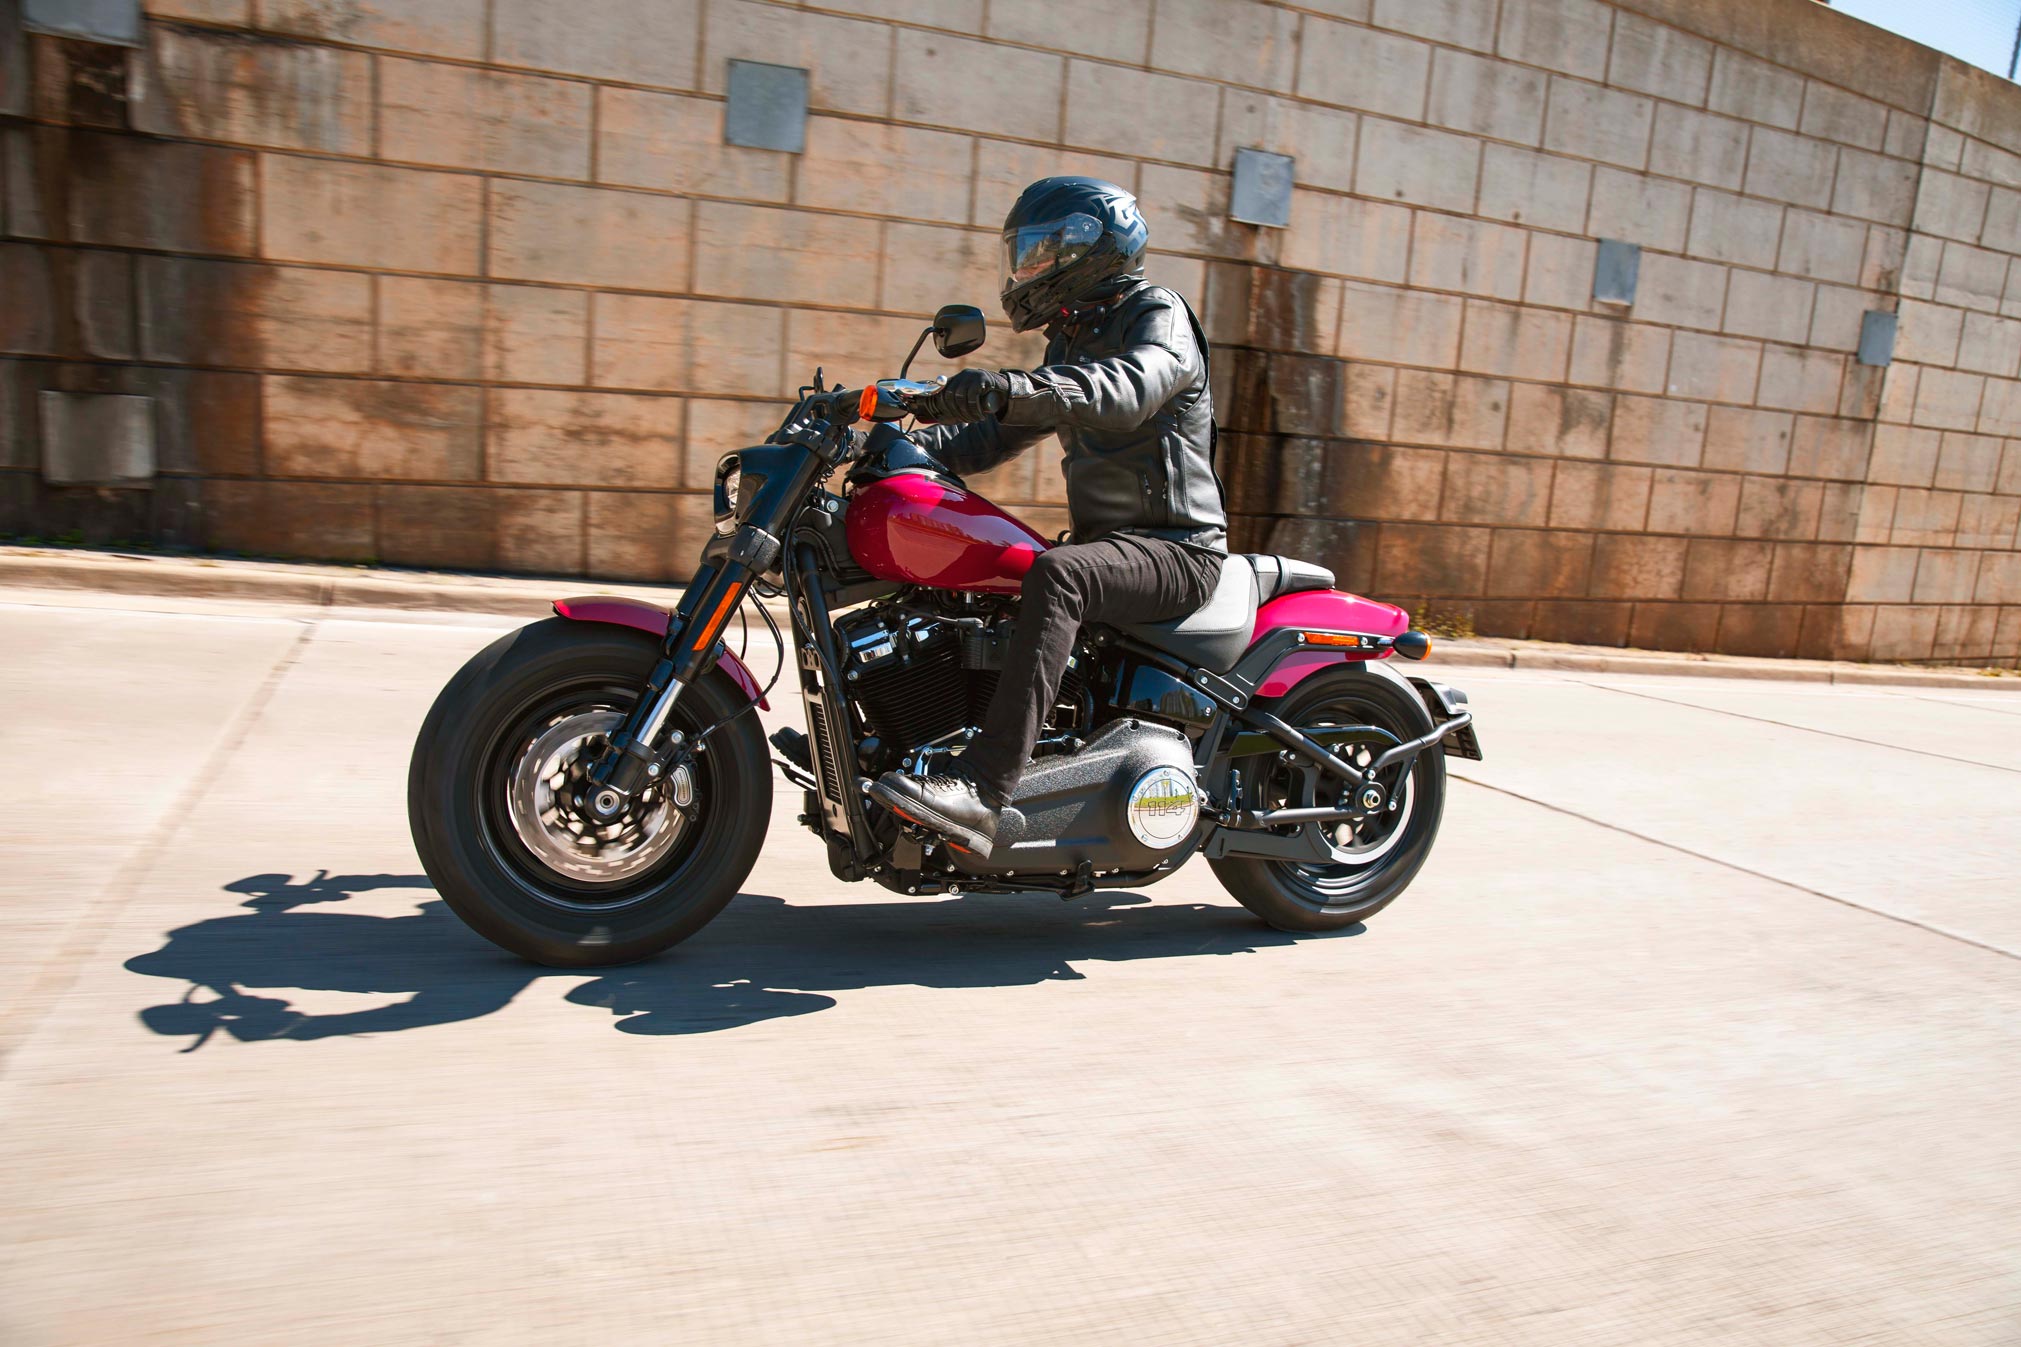 Harley Davidson 2021 New Models Promotion Off59